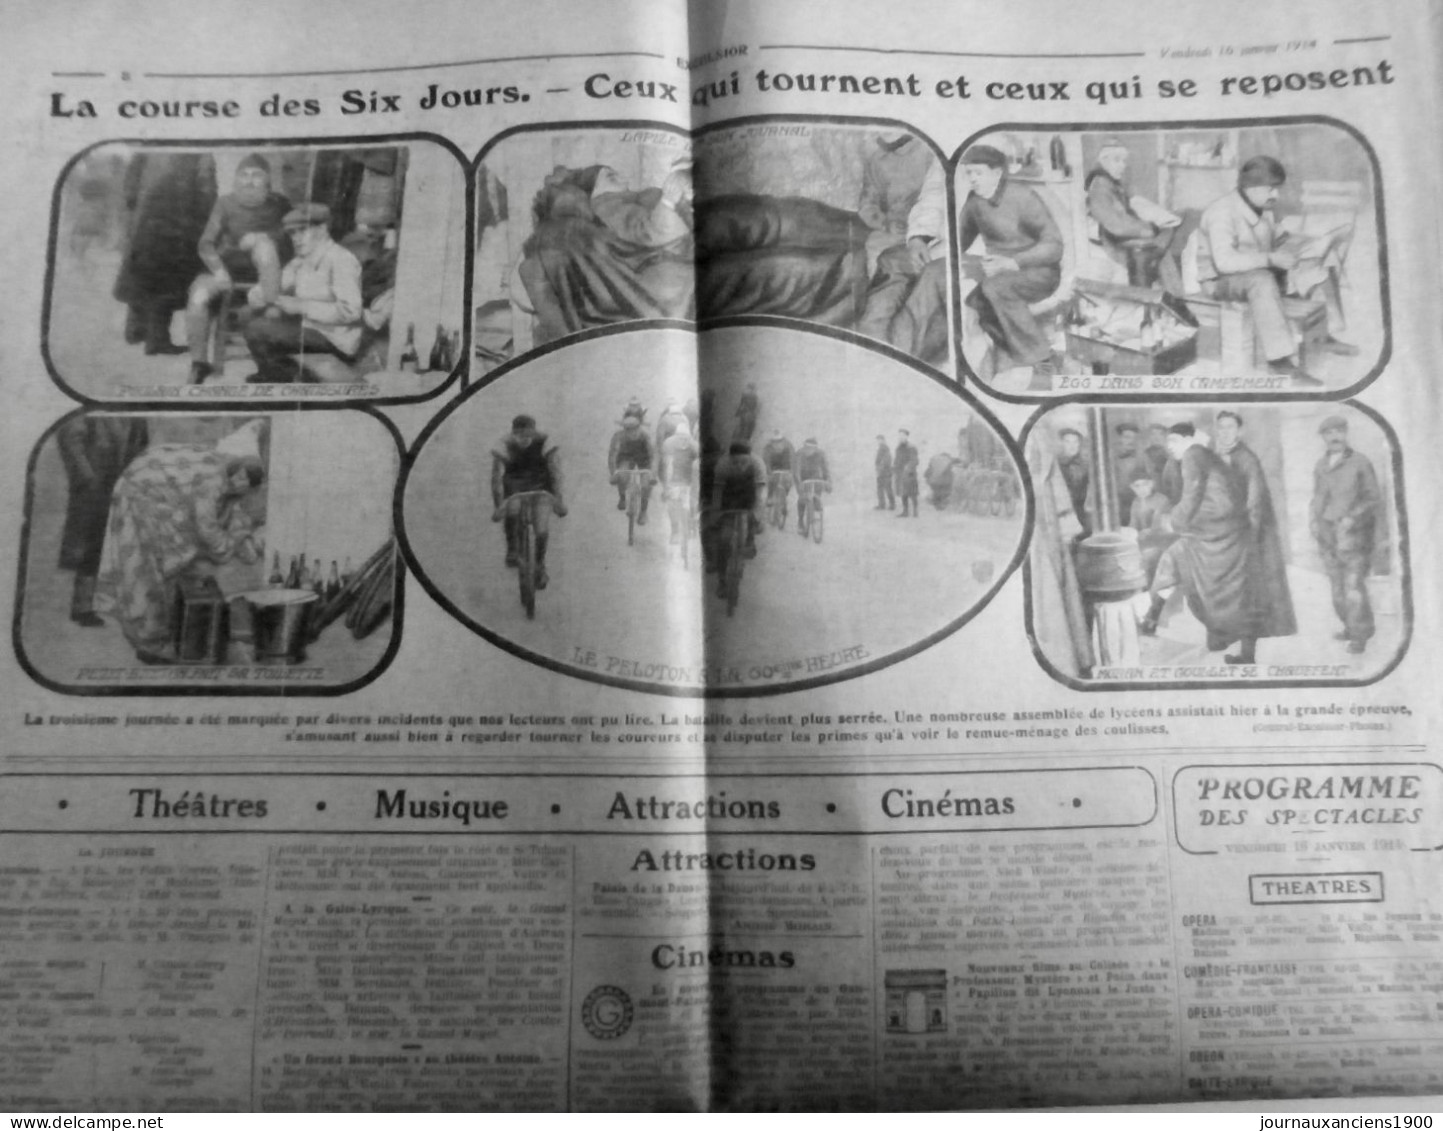 1914 EXCELSIOR ARTICLE DE PRESSE CYCLISME COURSE SIX JOURS PELOTON 1 JOURNAL ANCIEN - Plaques De Verre